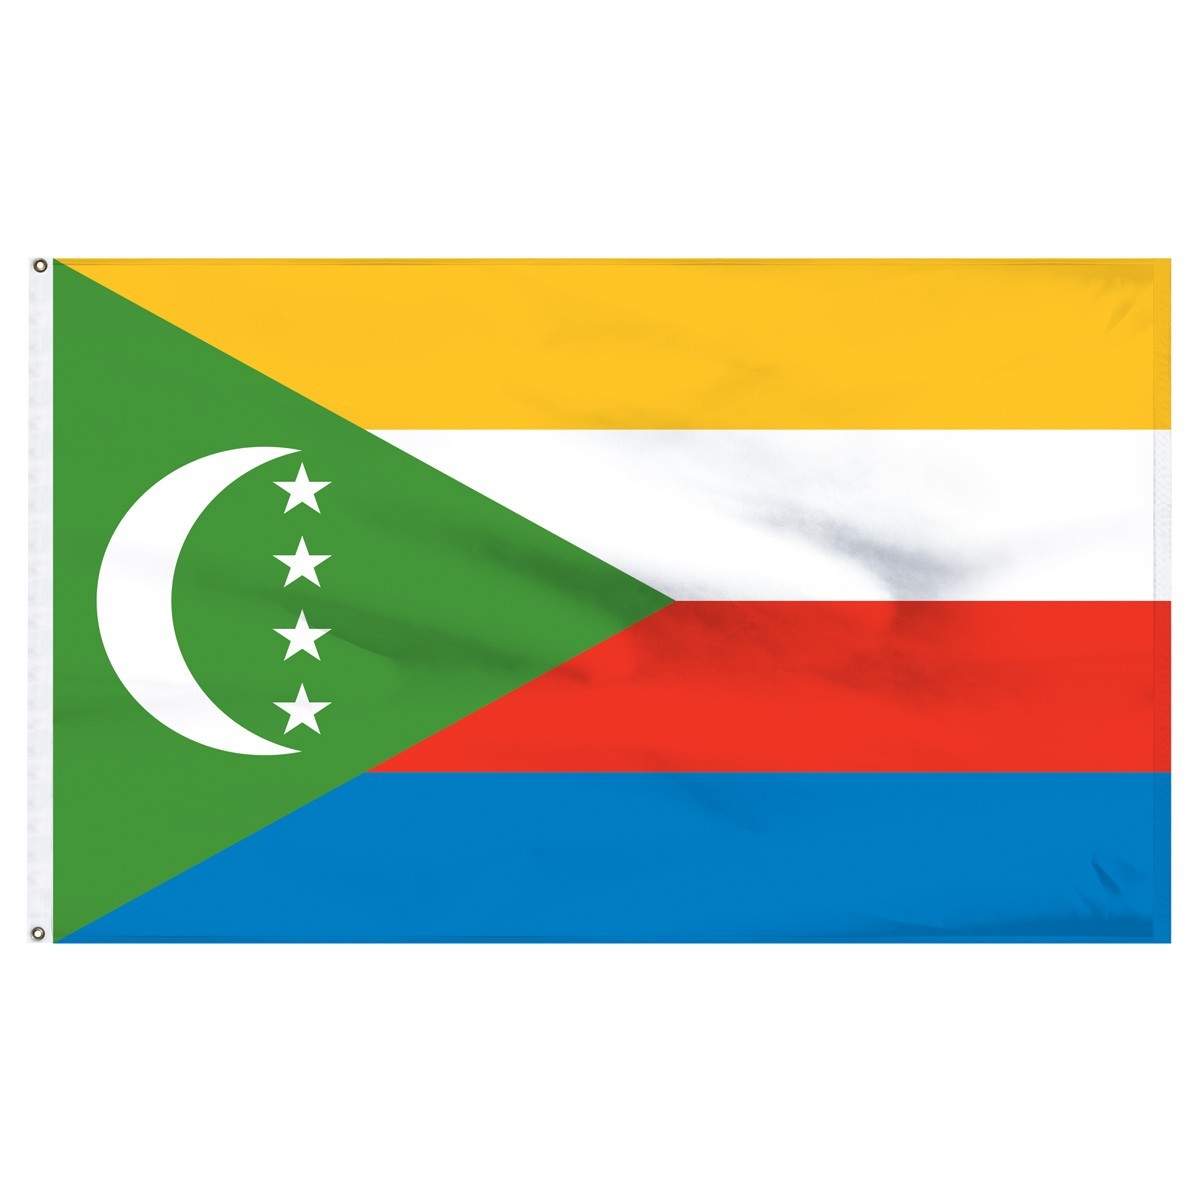 Comoros 5' x 8' Outdoor Nylon Flag